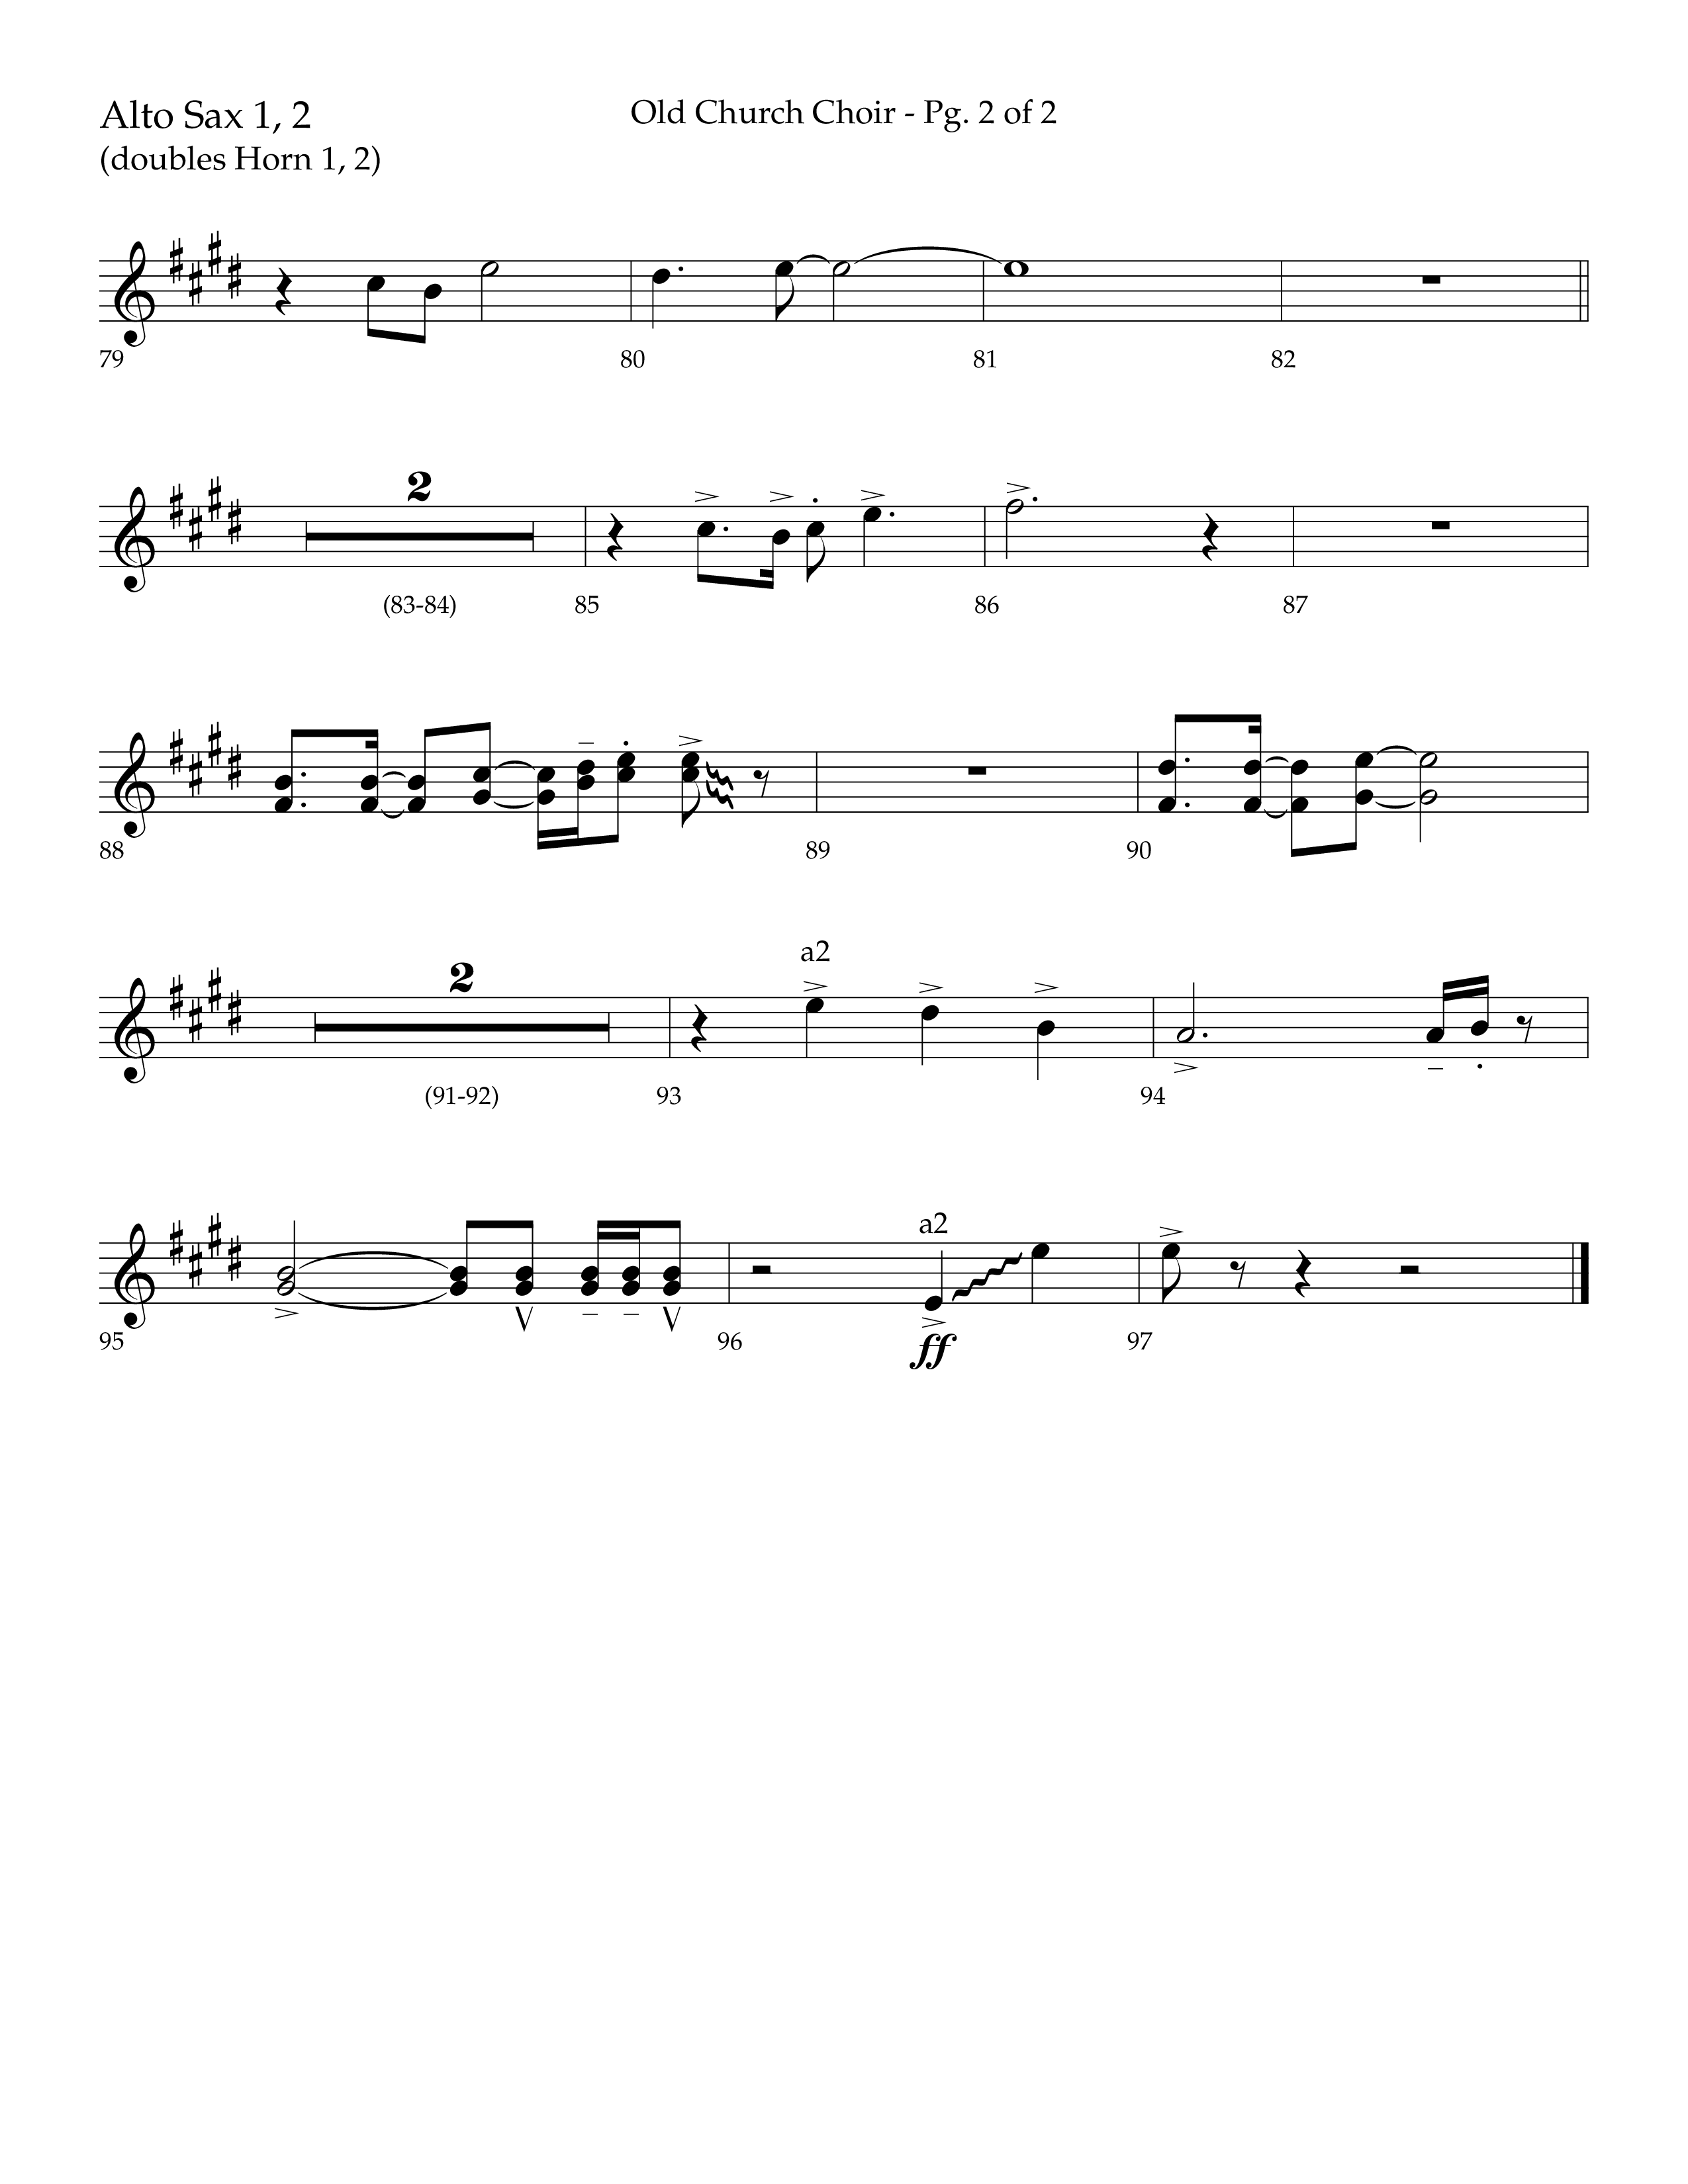 Old Church Choir (Choral Anthem SATB) Alto Sax 1/2 (Lifeway Choral / Arr. Ken Barker / Arr. Craig Adams / Arr. Danny Zaloudik)